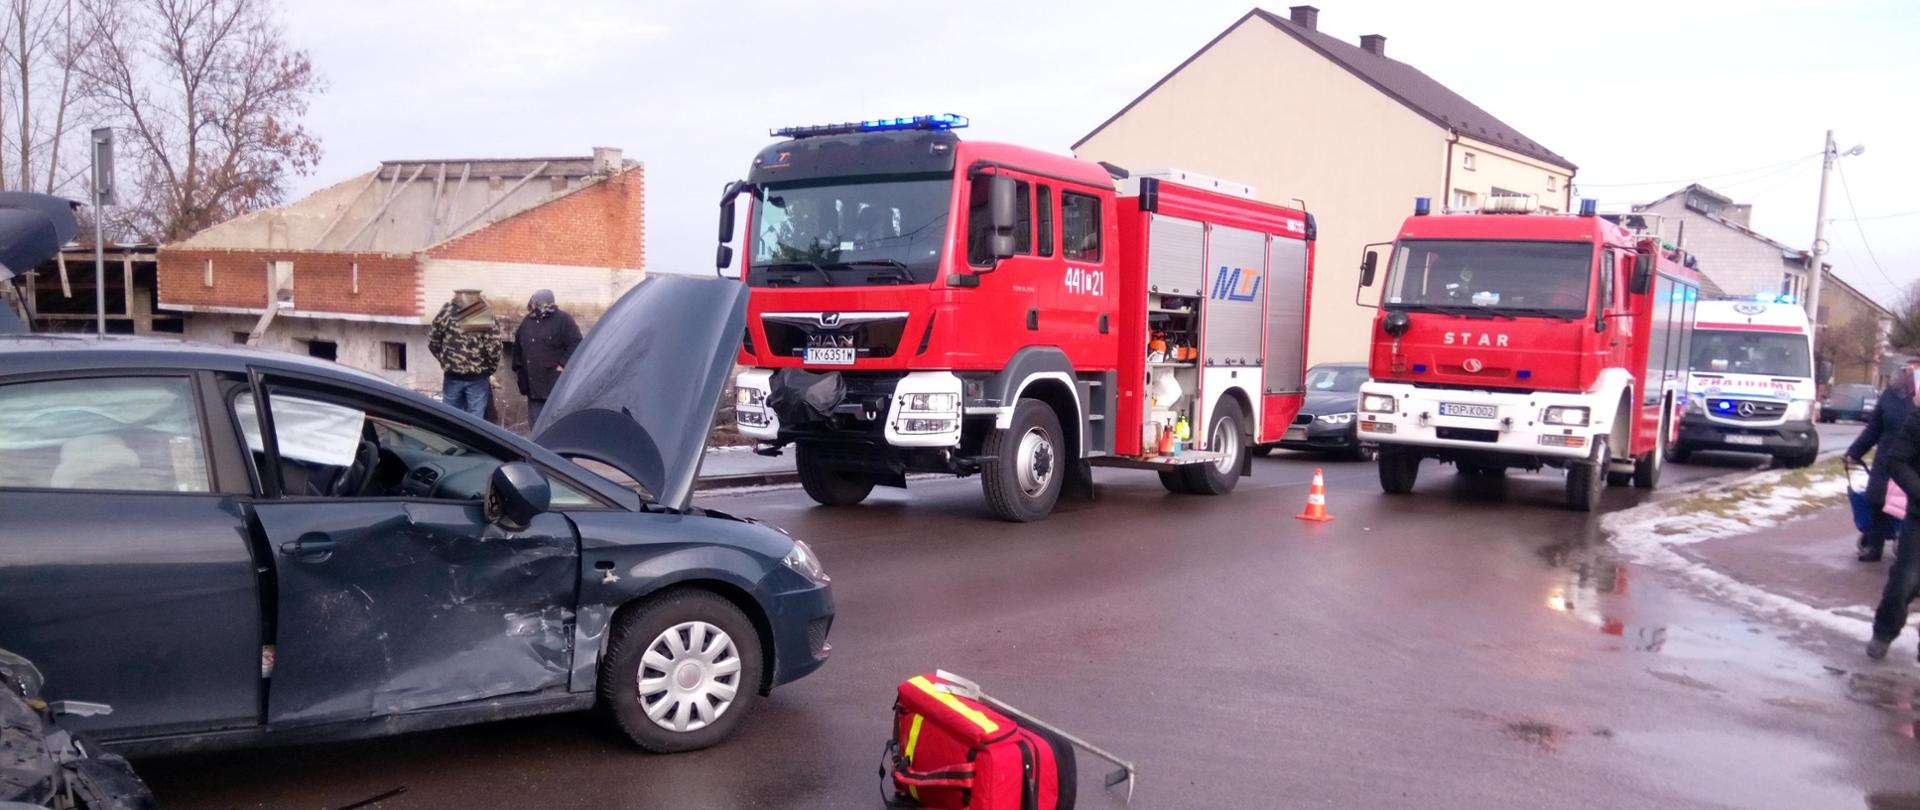 Zdjęcie przedstawia dwa samochody uczestniczące w wypadku. W tle widać uczestników zdarzenia dwa samochody pożarnicze oraz budynki mieszkalne.